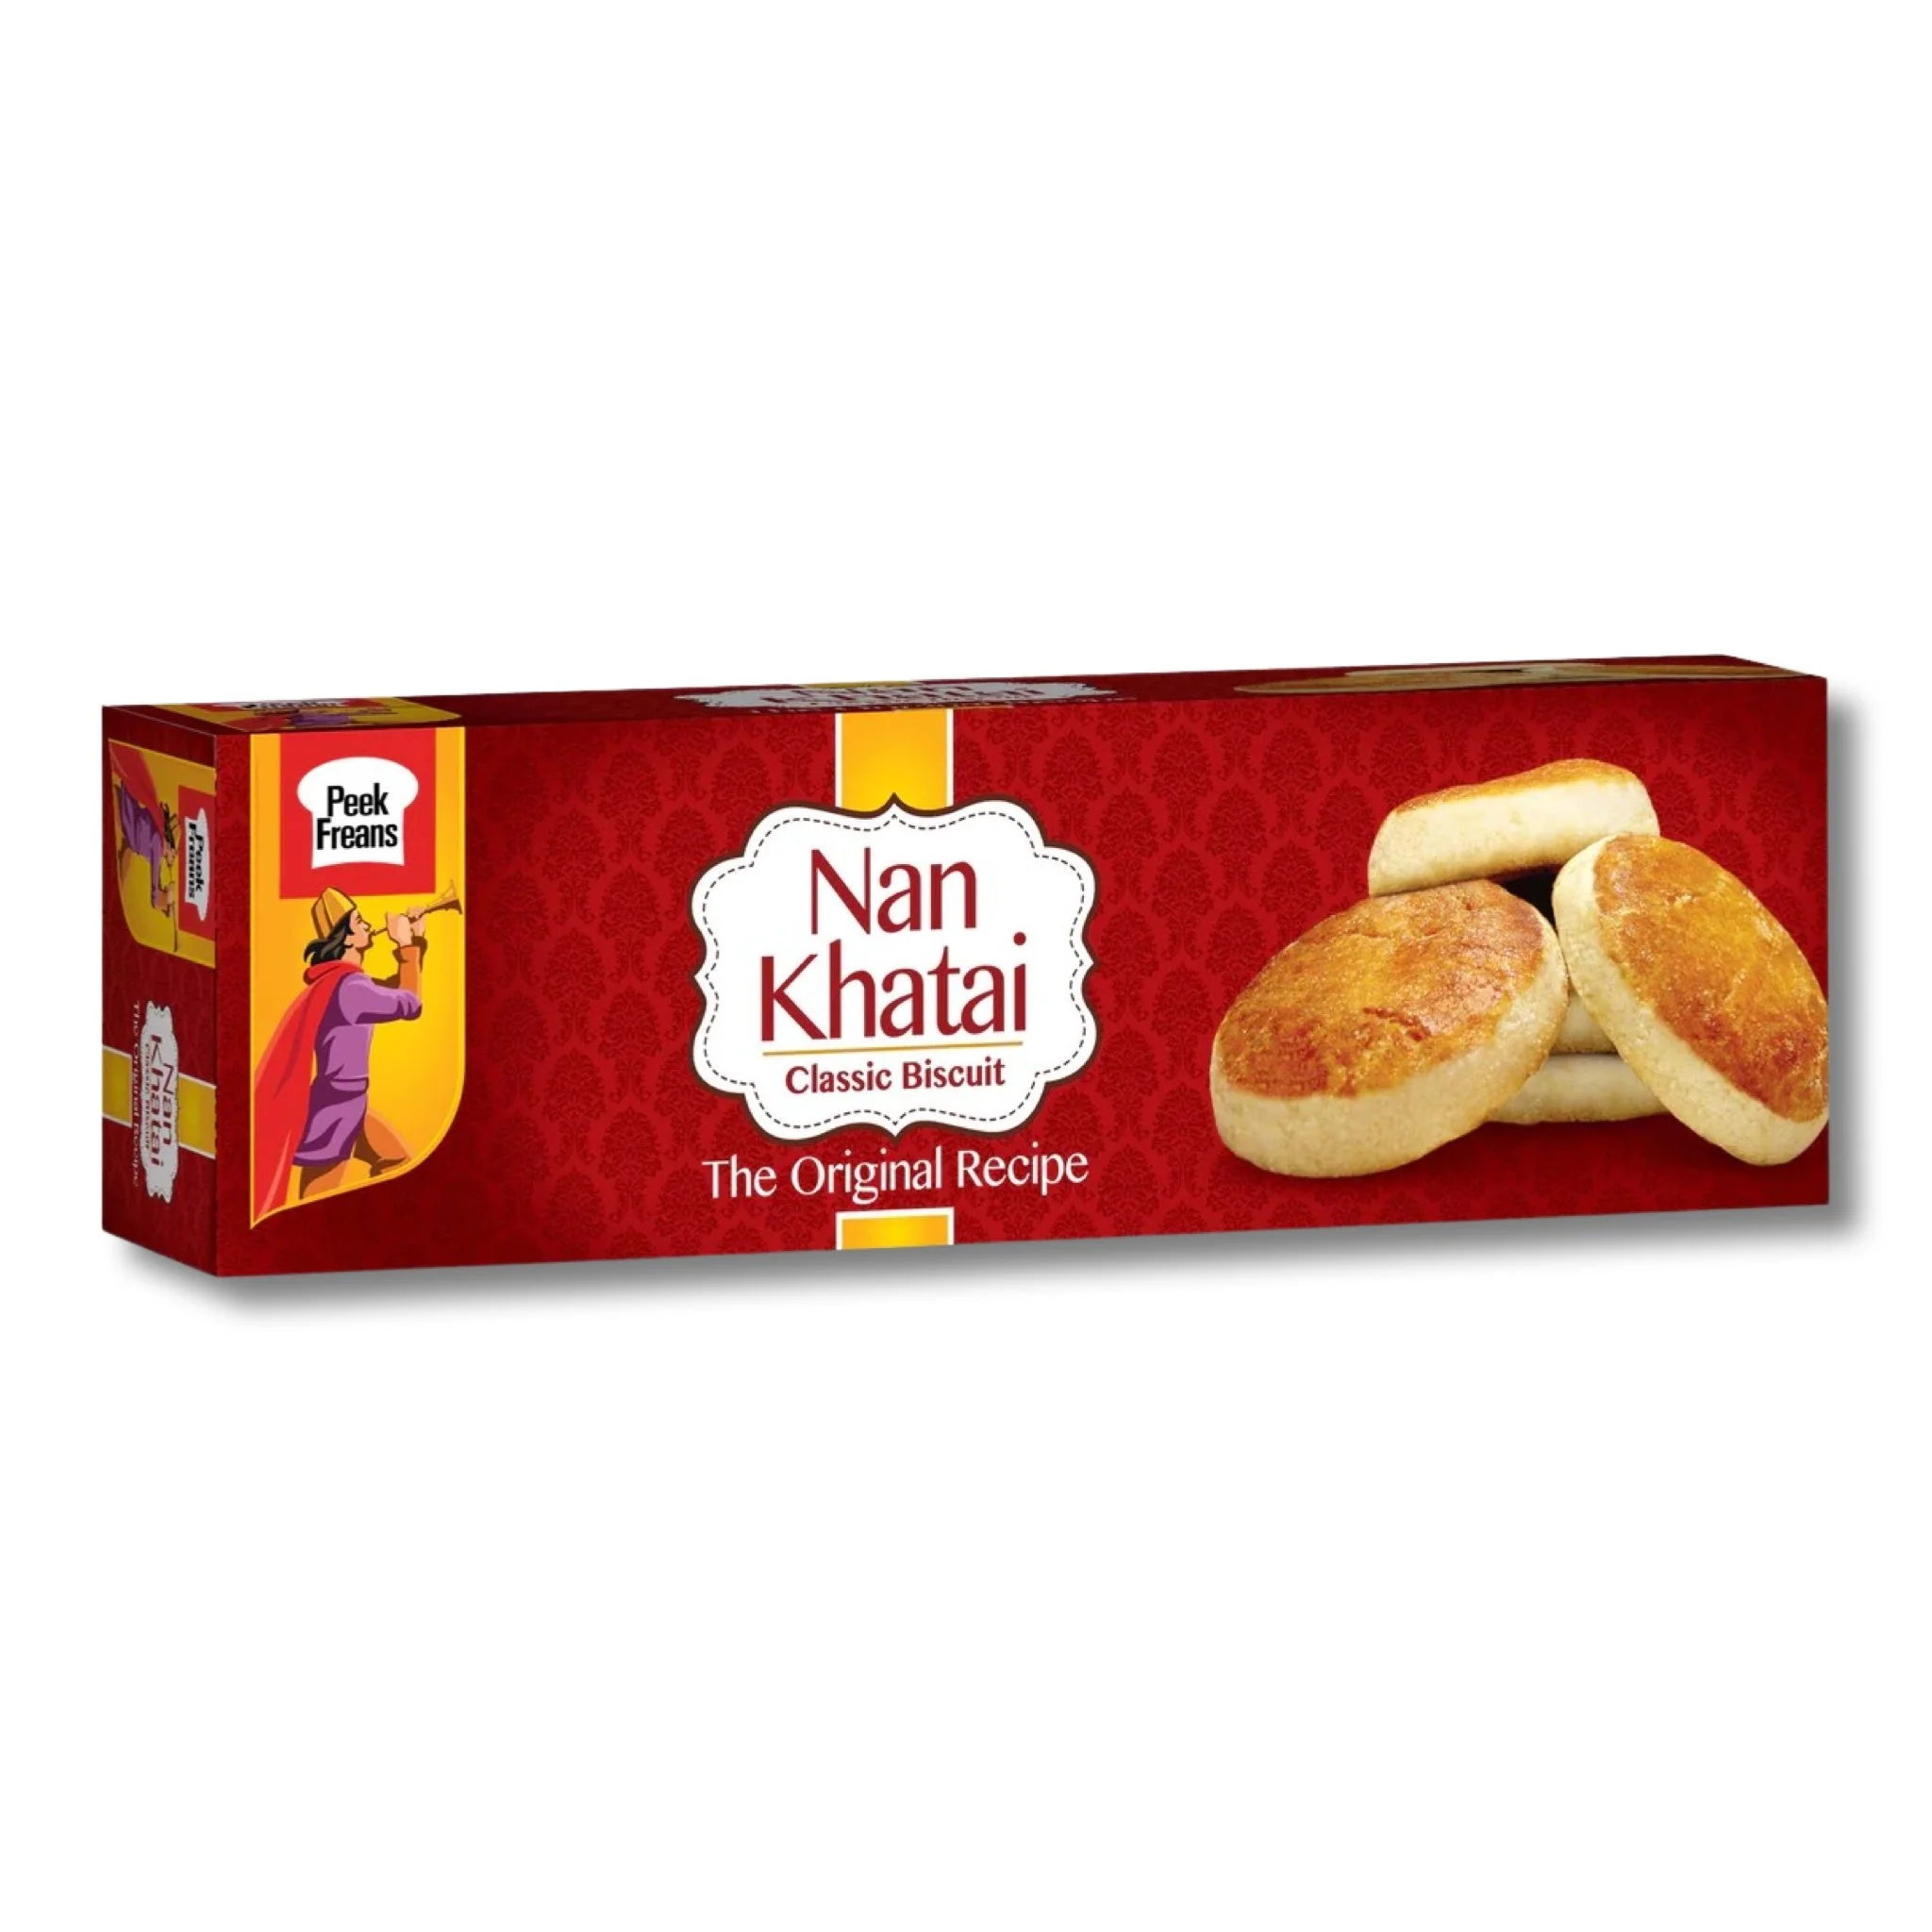 Nan Khatai Classic Biscuit